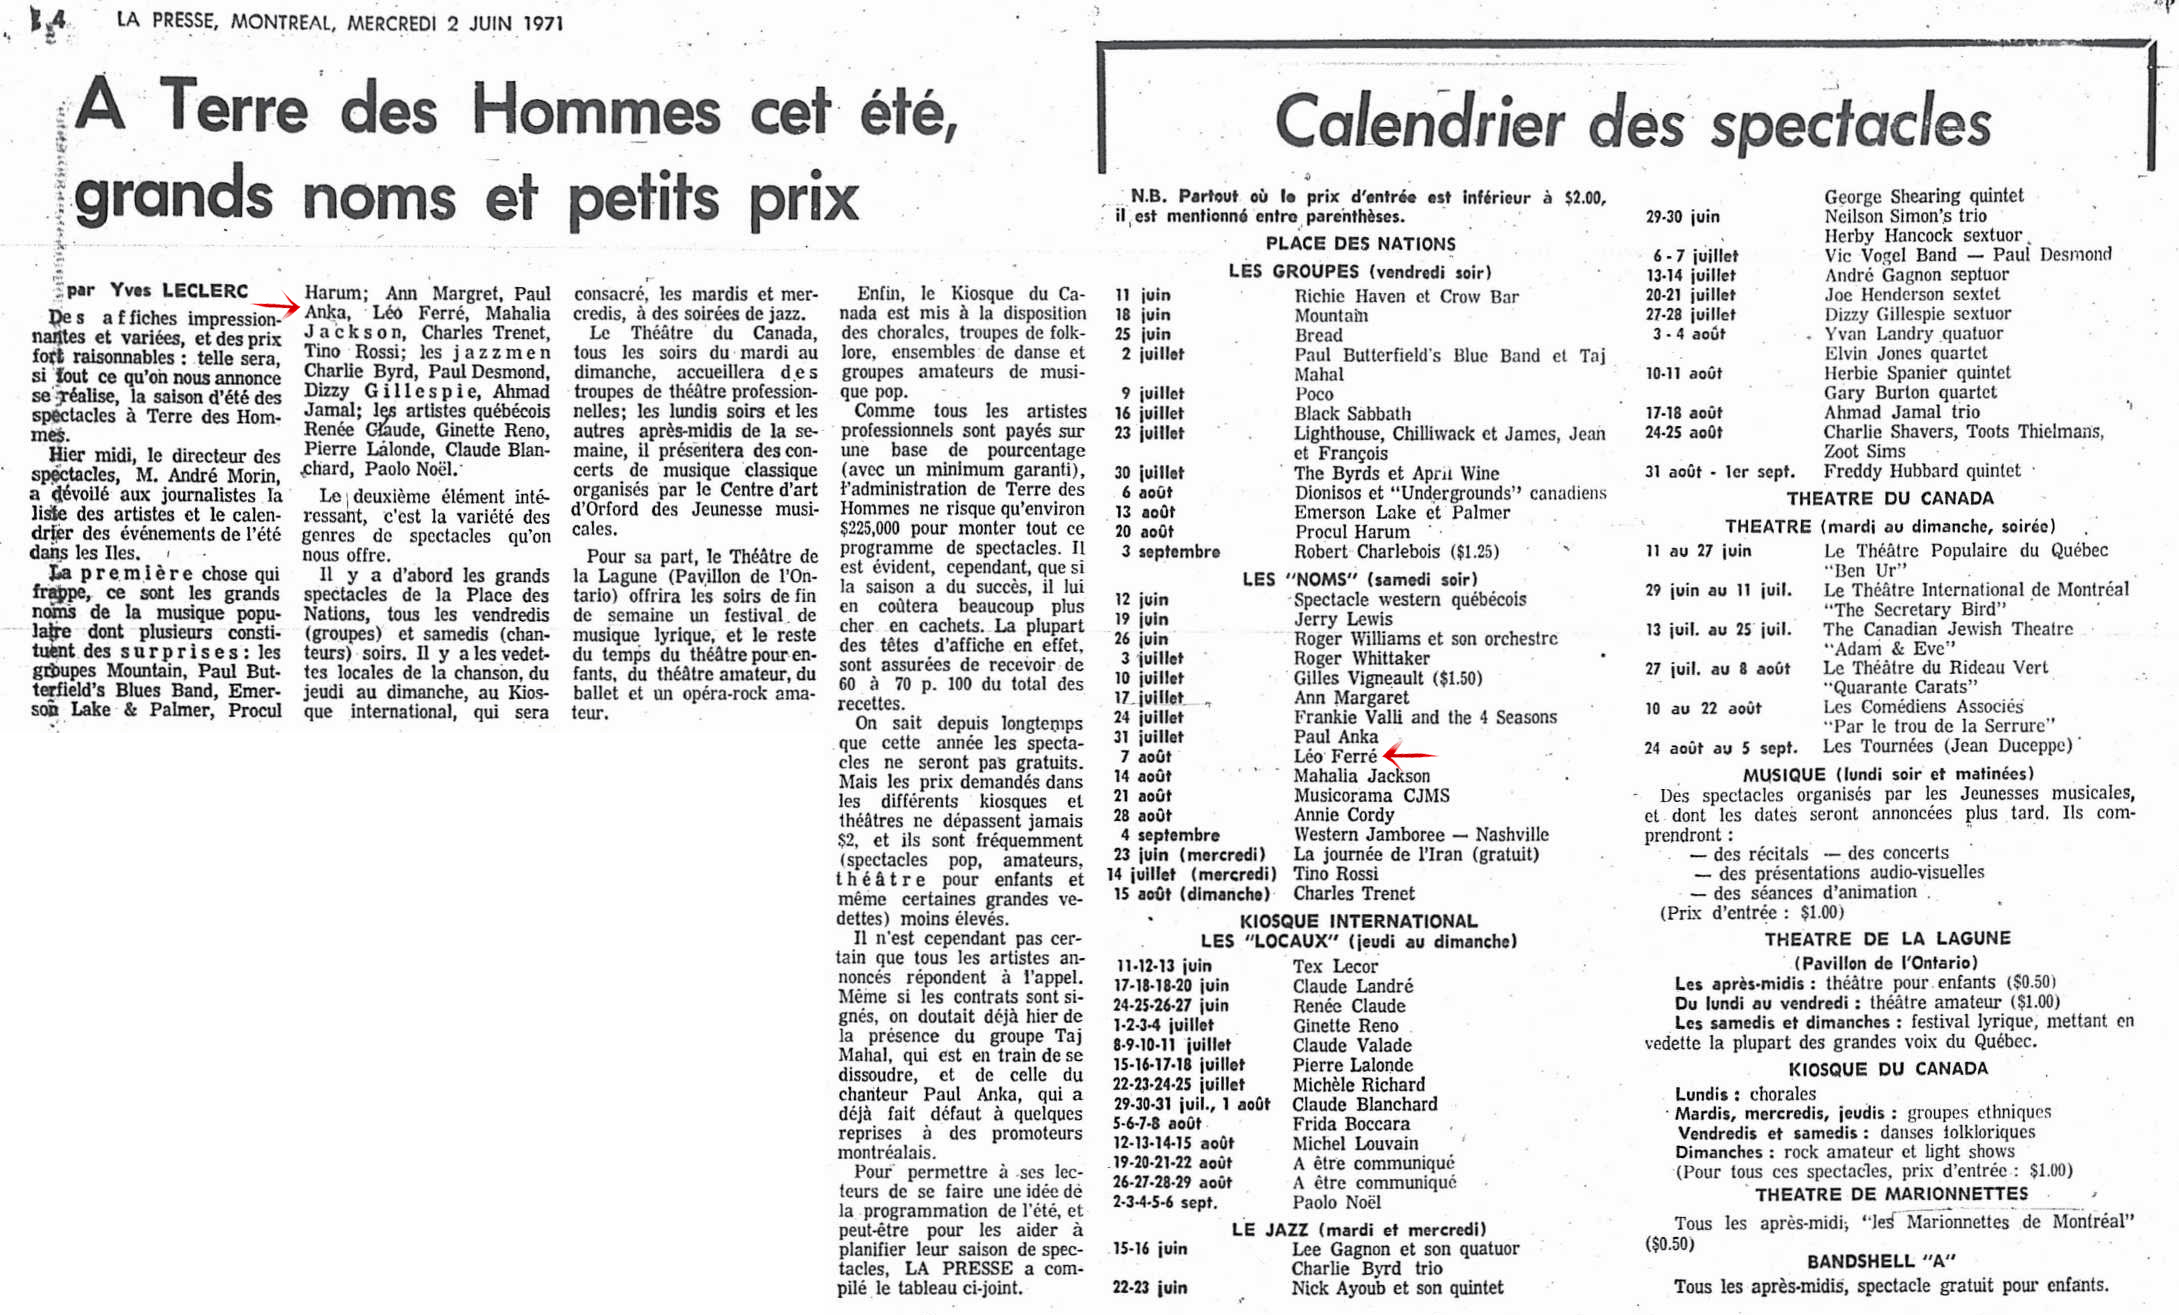 Léo Ferré - La presse, 1884- (Montréal), 2 juin 1971, Cahier E